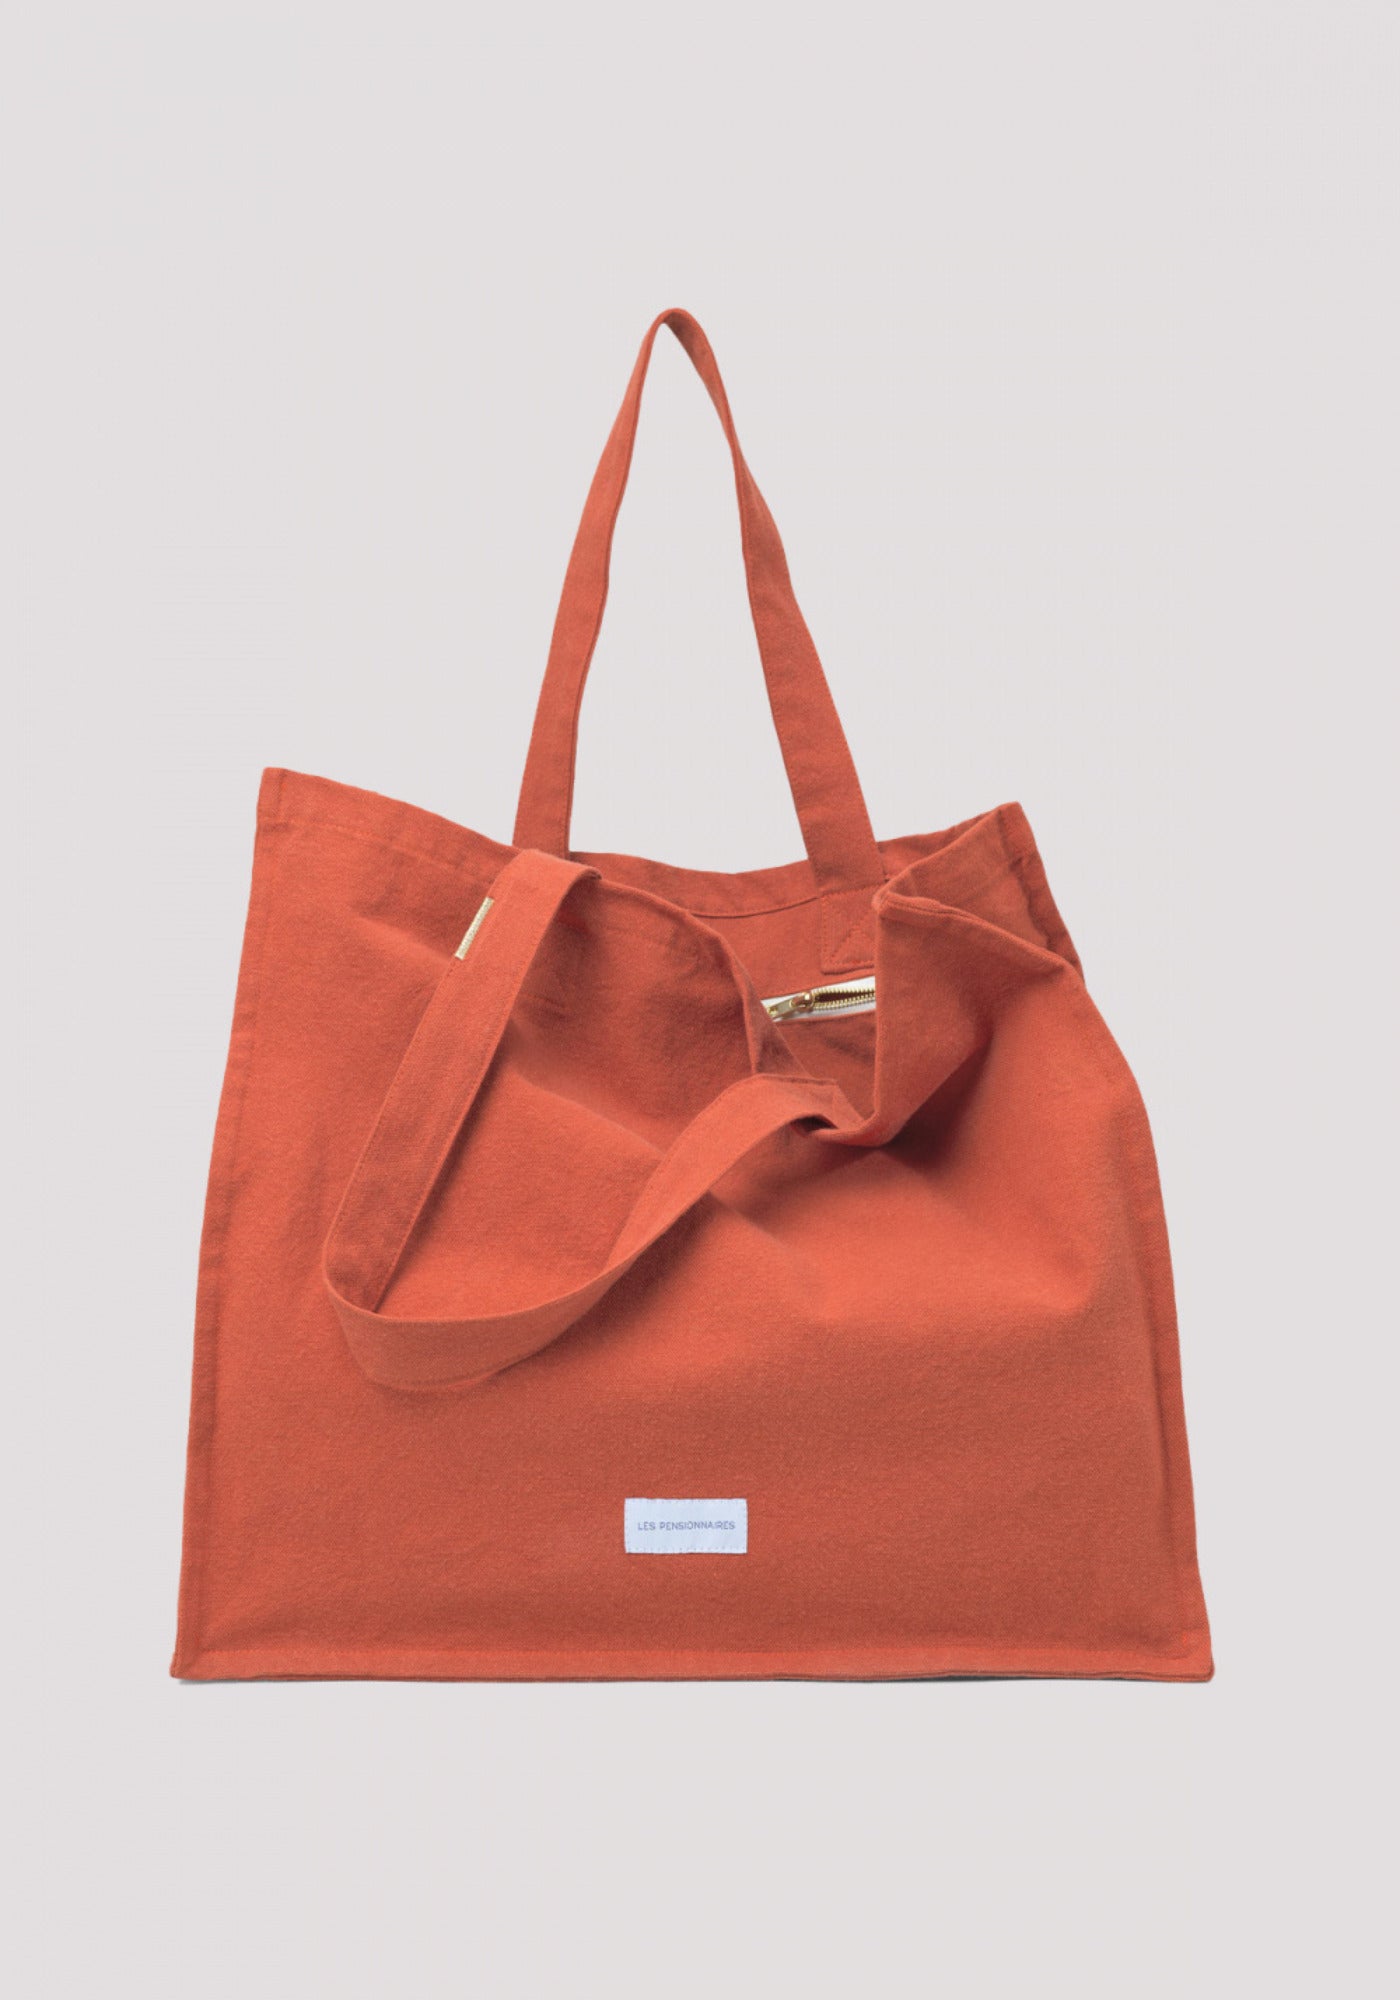 Le grand sac cabas orange flamboyant de chez Les Pensionnaires